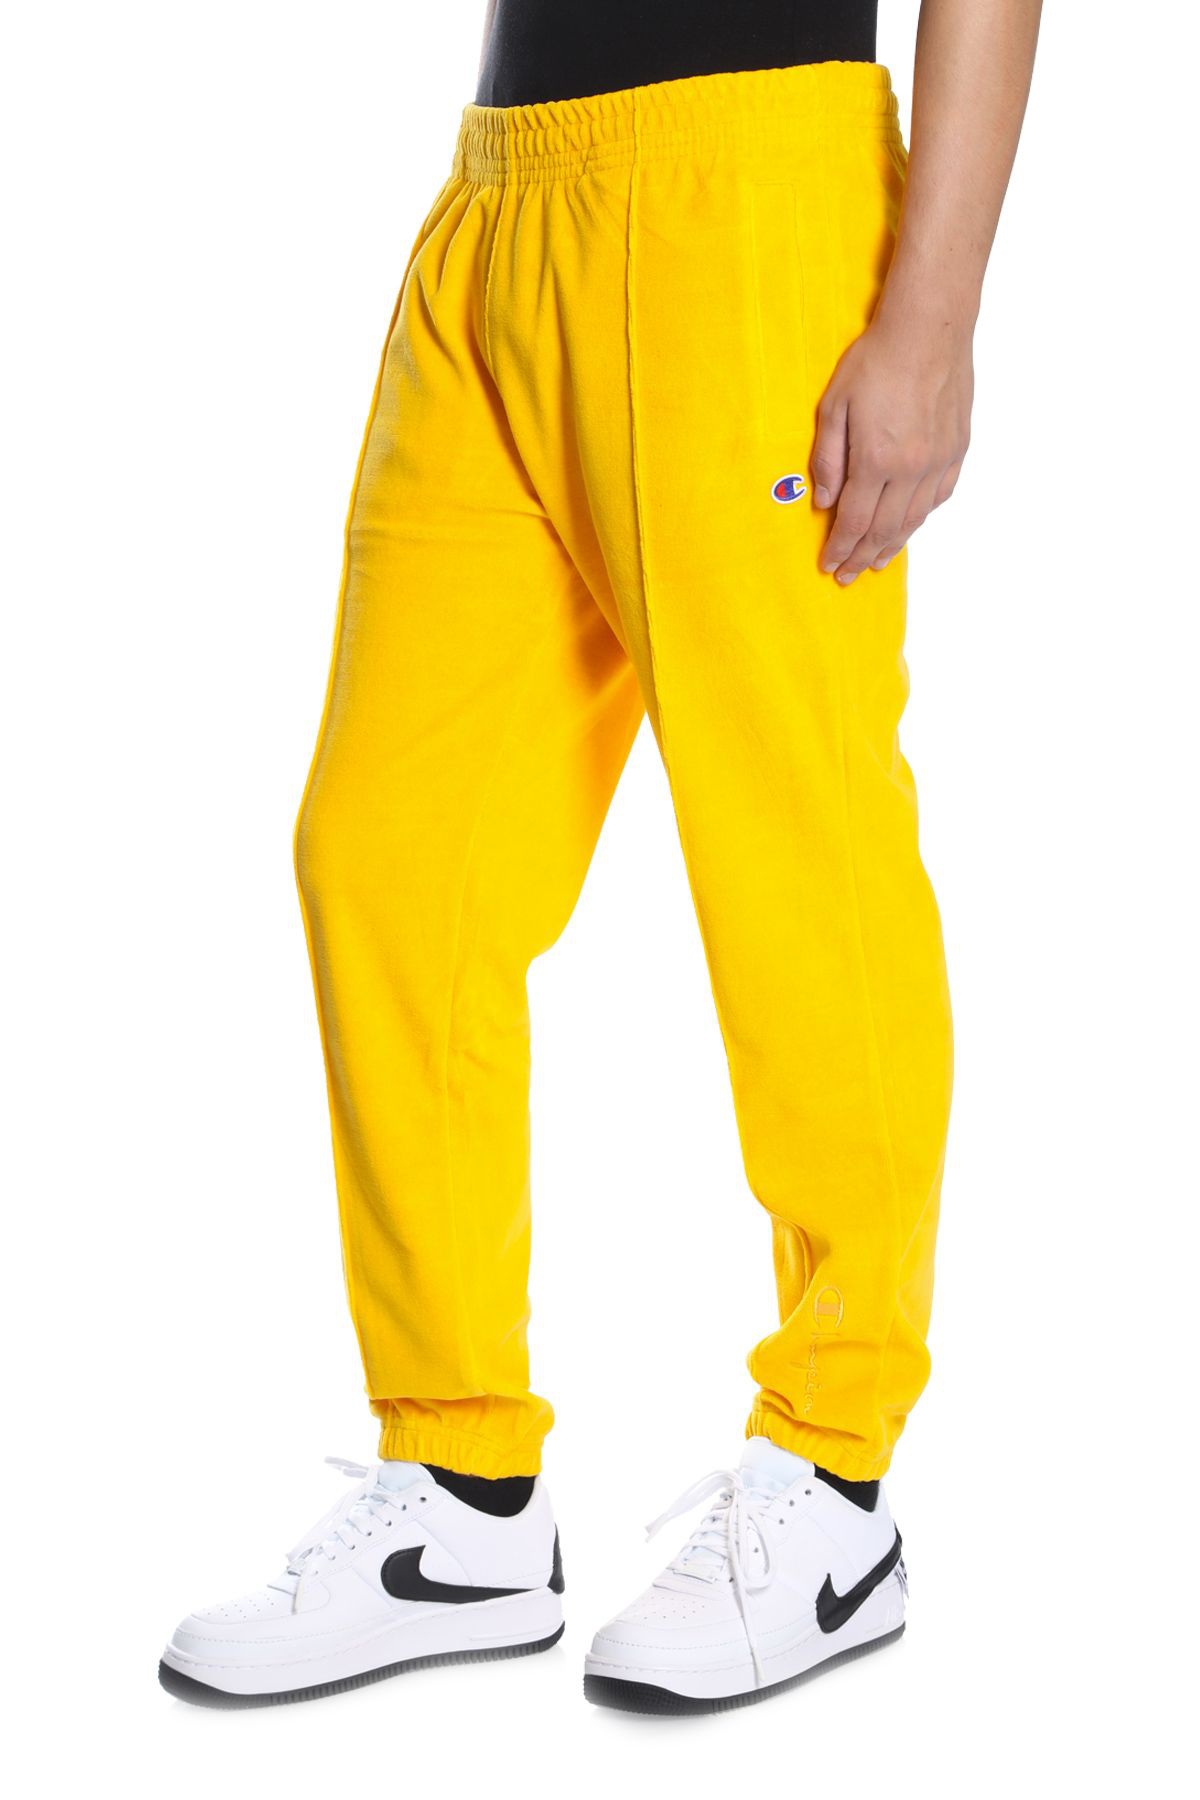 champion yellow pants